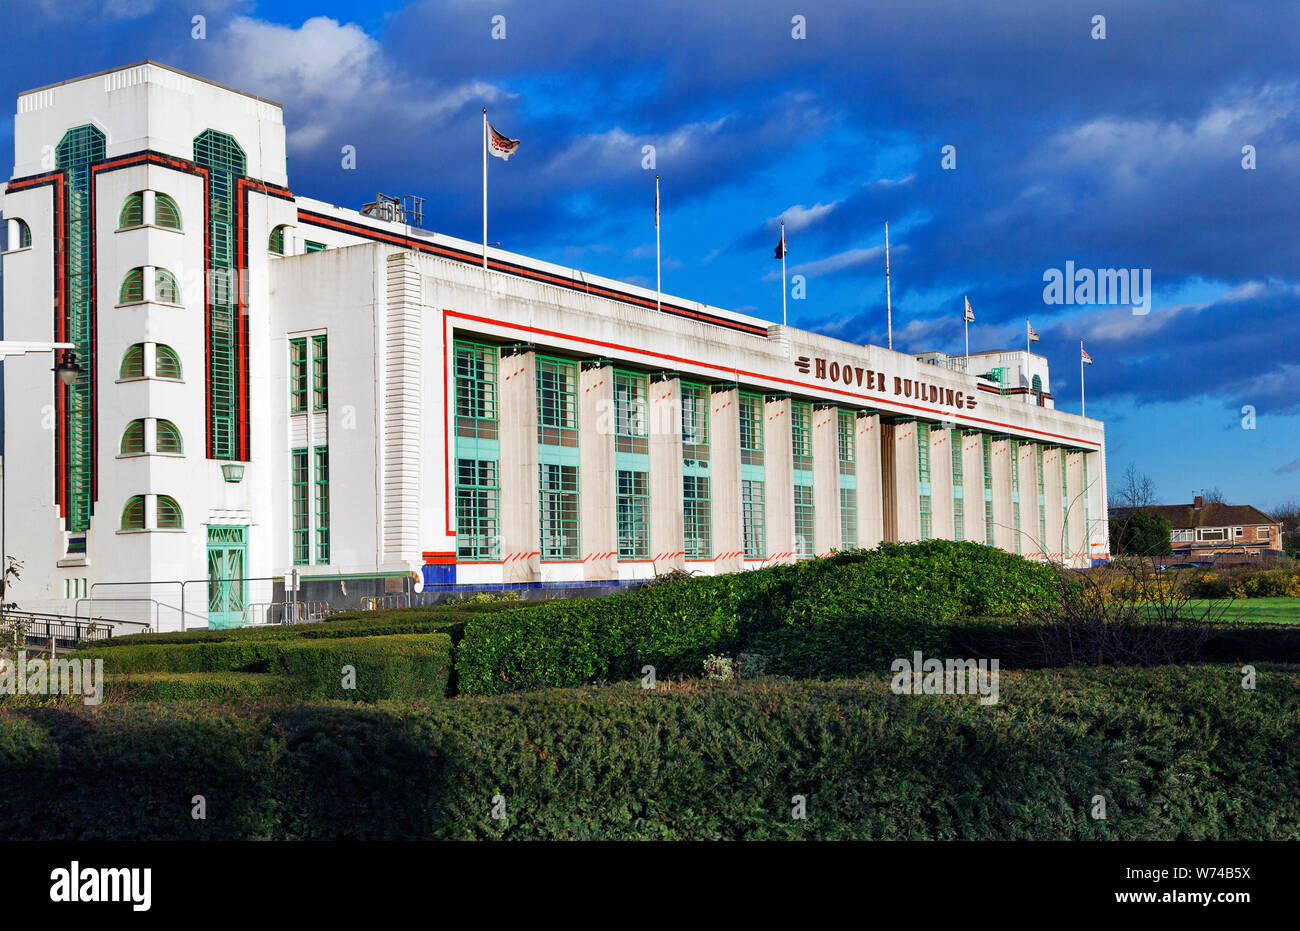 La Hoover edificio enumerado II del grado de arquitectura Art Deco, Western Avenue, Perivale, Greater London, England, Reino Unido Foto de stock